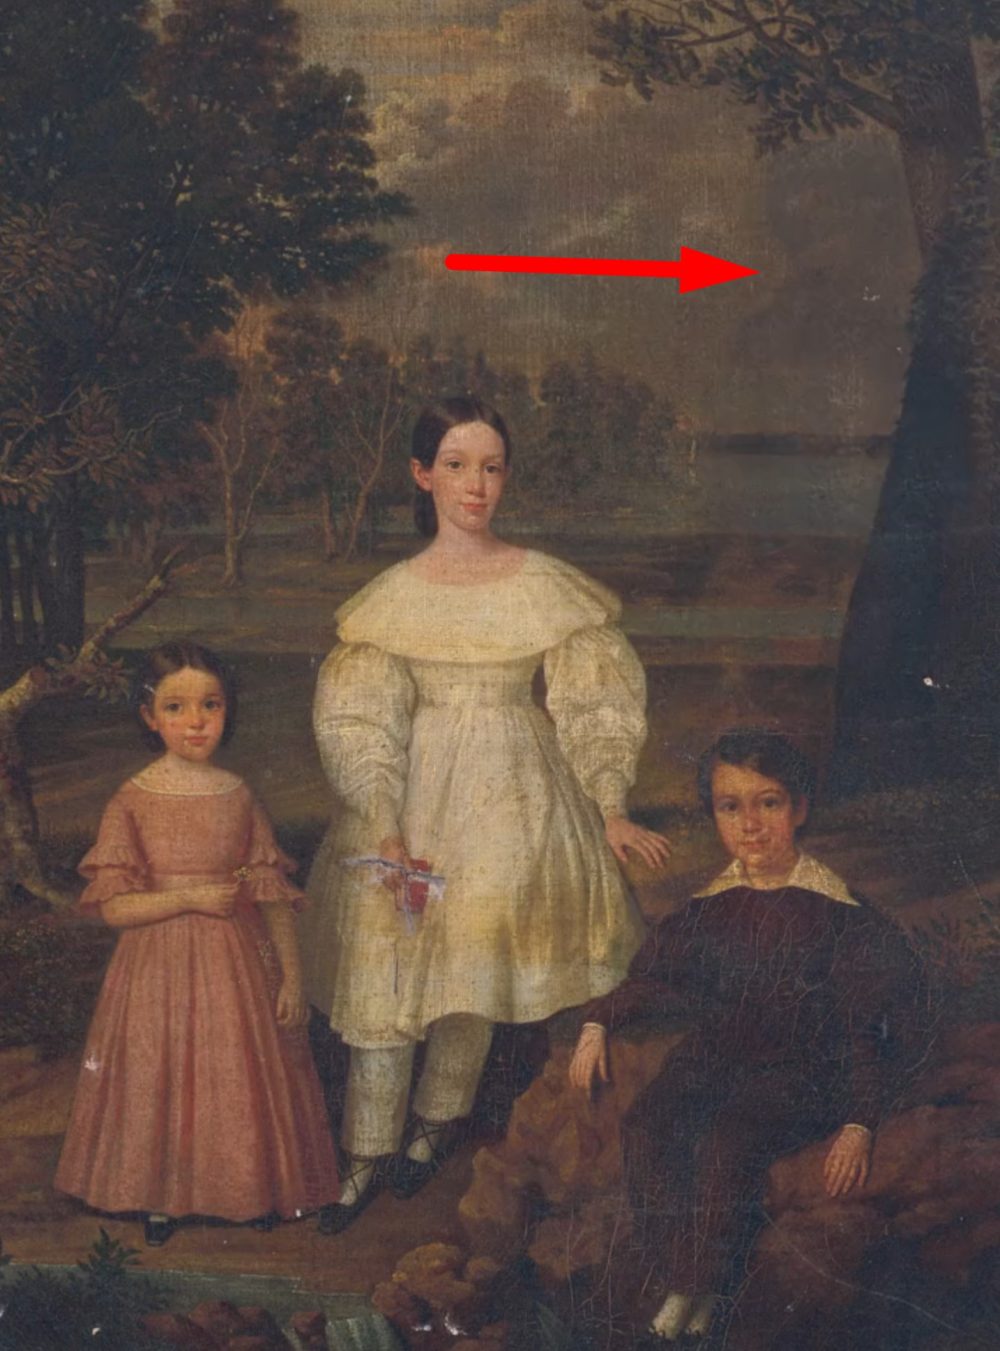 El Met adquirió un retrato del siglo XIX, conocido como “Bélizaire y los niños Frey”, que ocultó la imagen de un niño esclavo durante más de 100 años hasta que una restauración lo reveló.